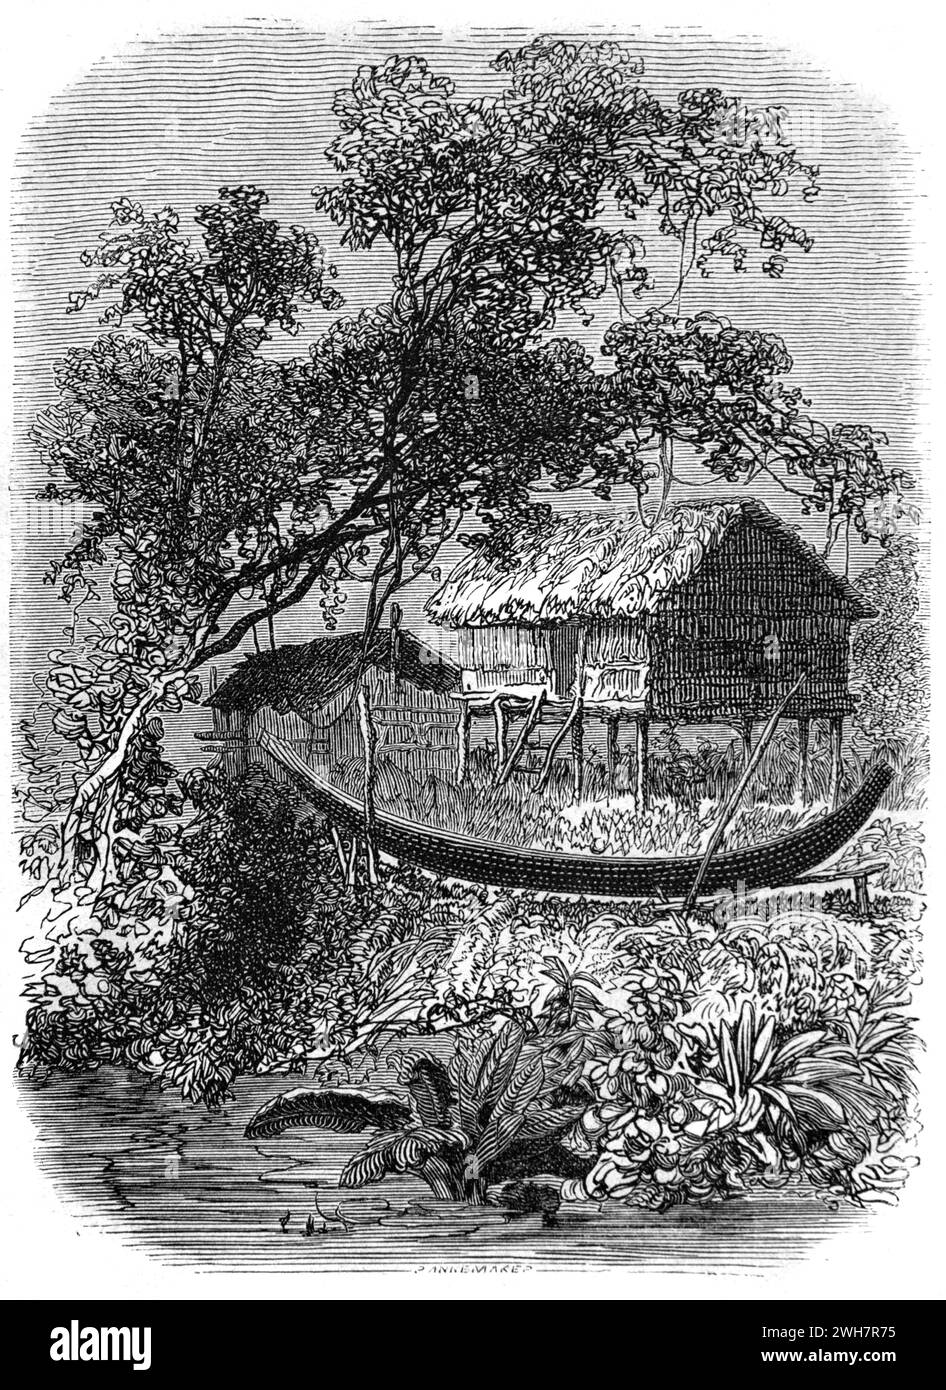 Traditionelle Kambodschanische Stelzhütte oder Grass Hut und Dugout Kanu am Riverbank Kambodscha. Vintage oder historische Gravur oder Illustration 1863 Stockfoto